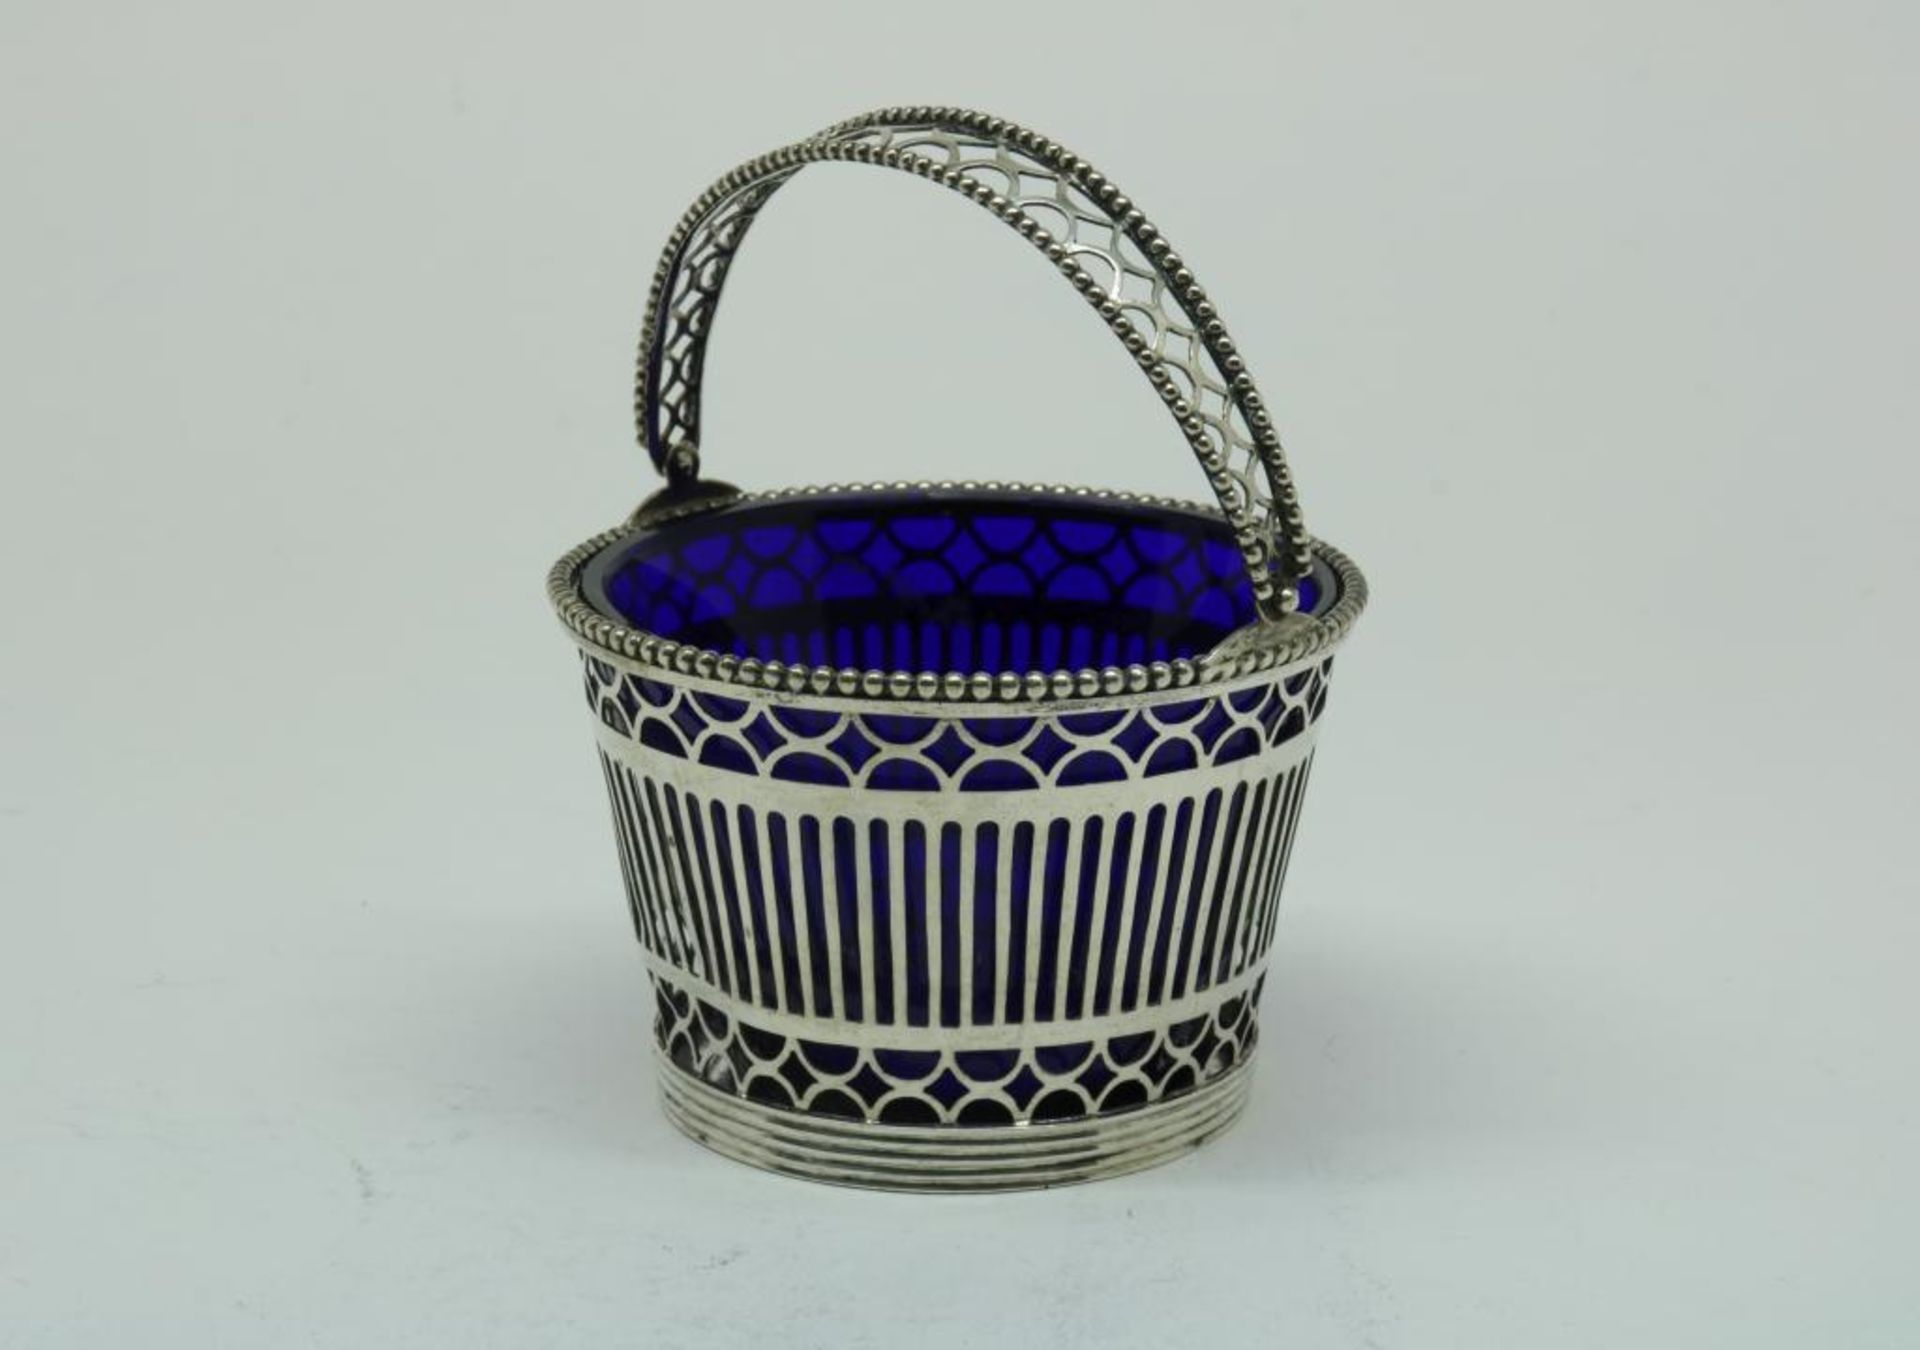 A silver ajour basket with blue glass liner, mm Gebr. Seton, Schoonhoven, dl 1911, 835/000, gross w.